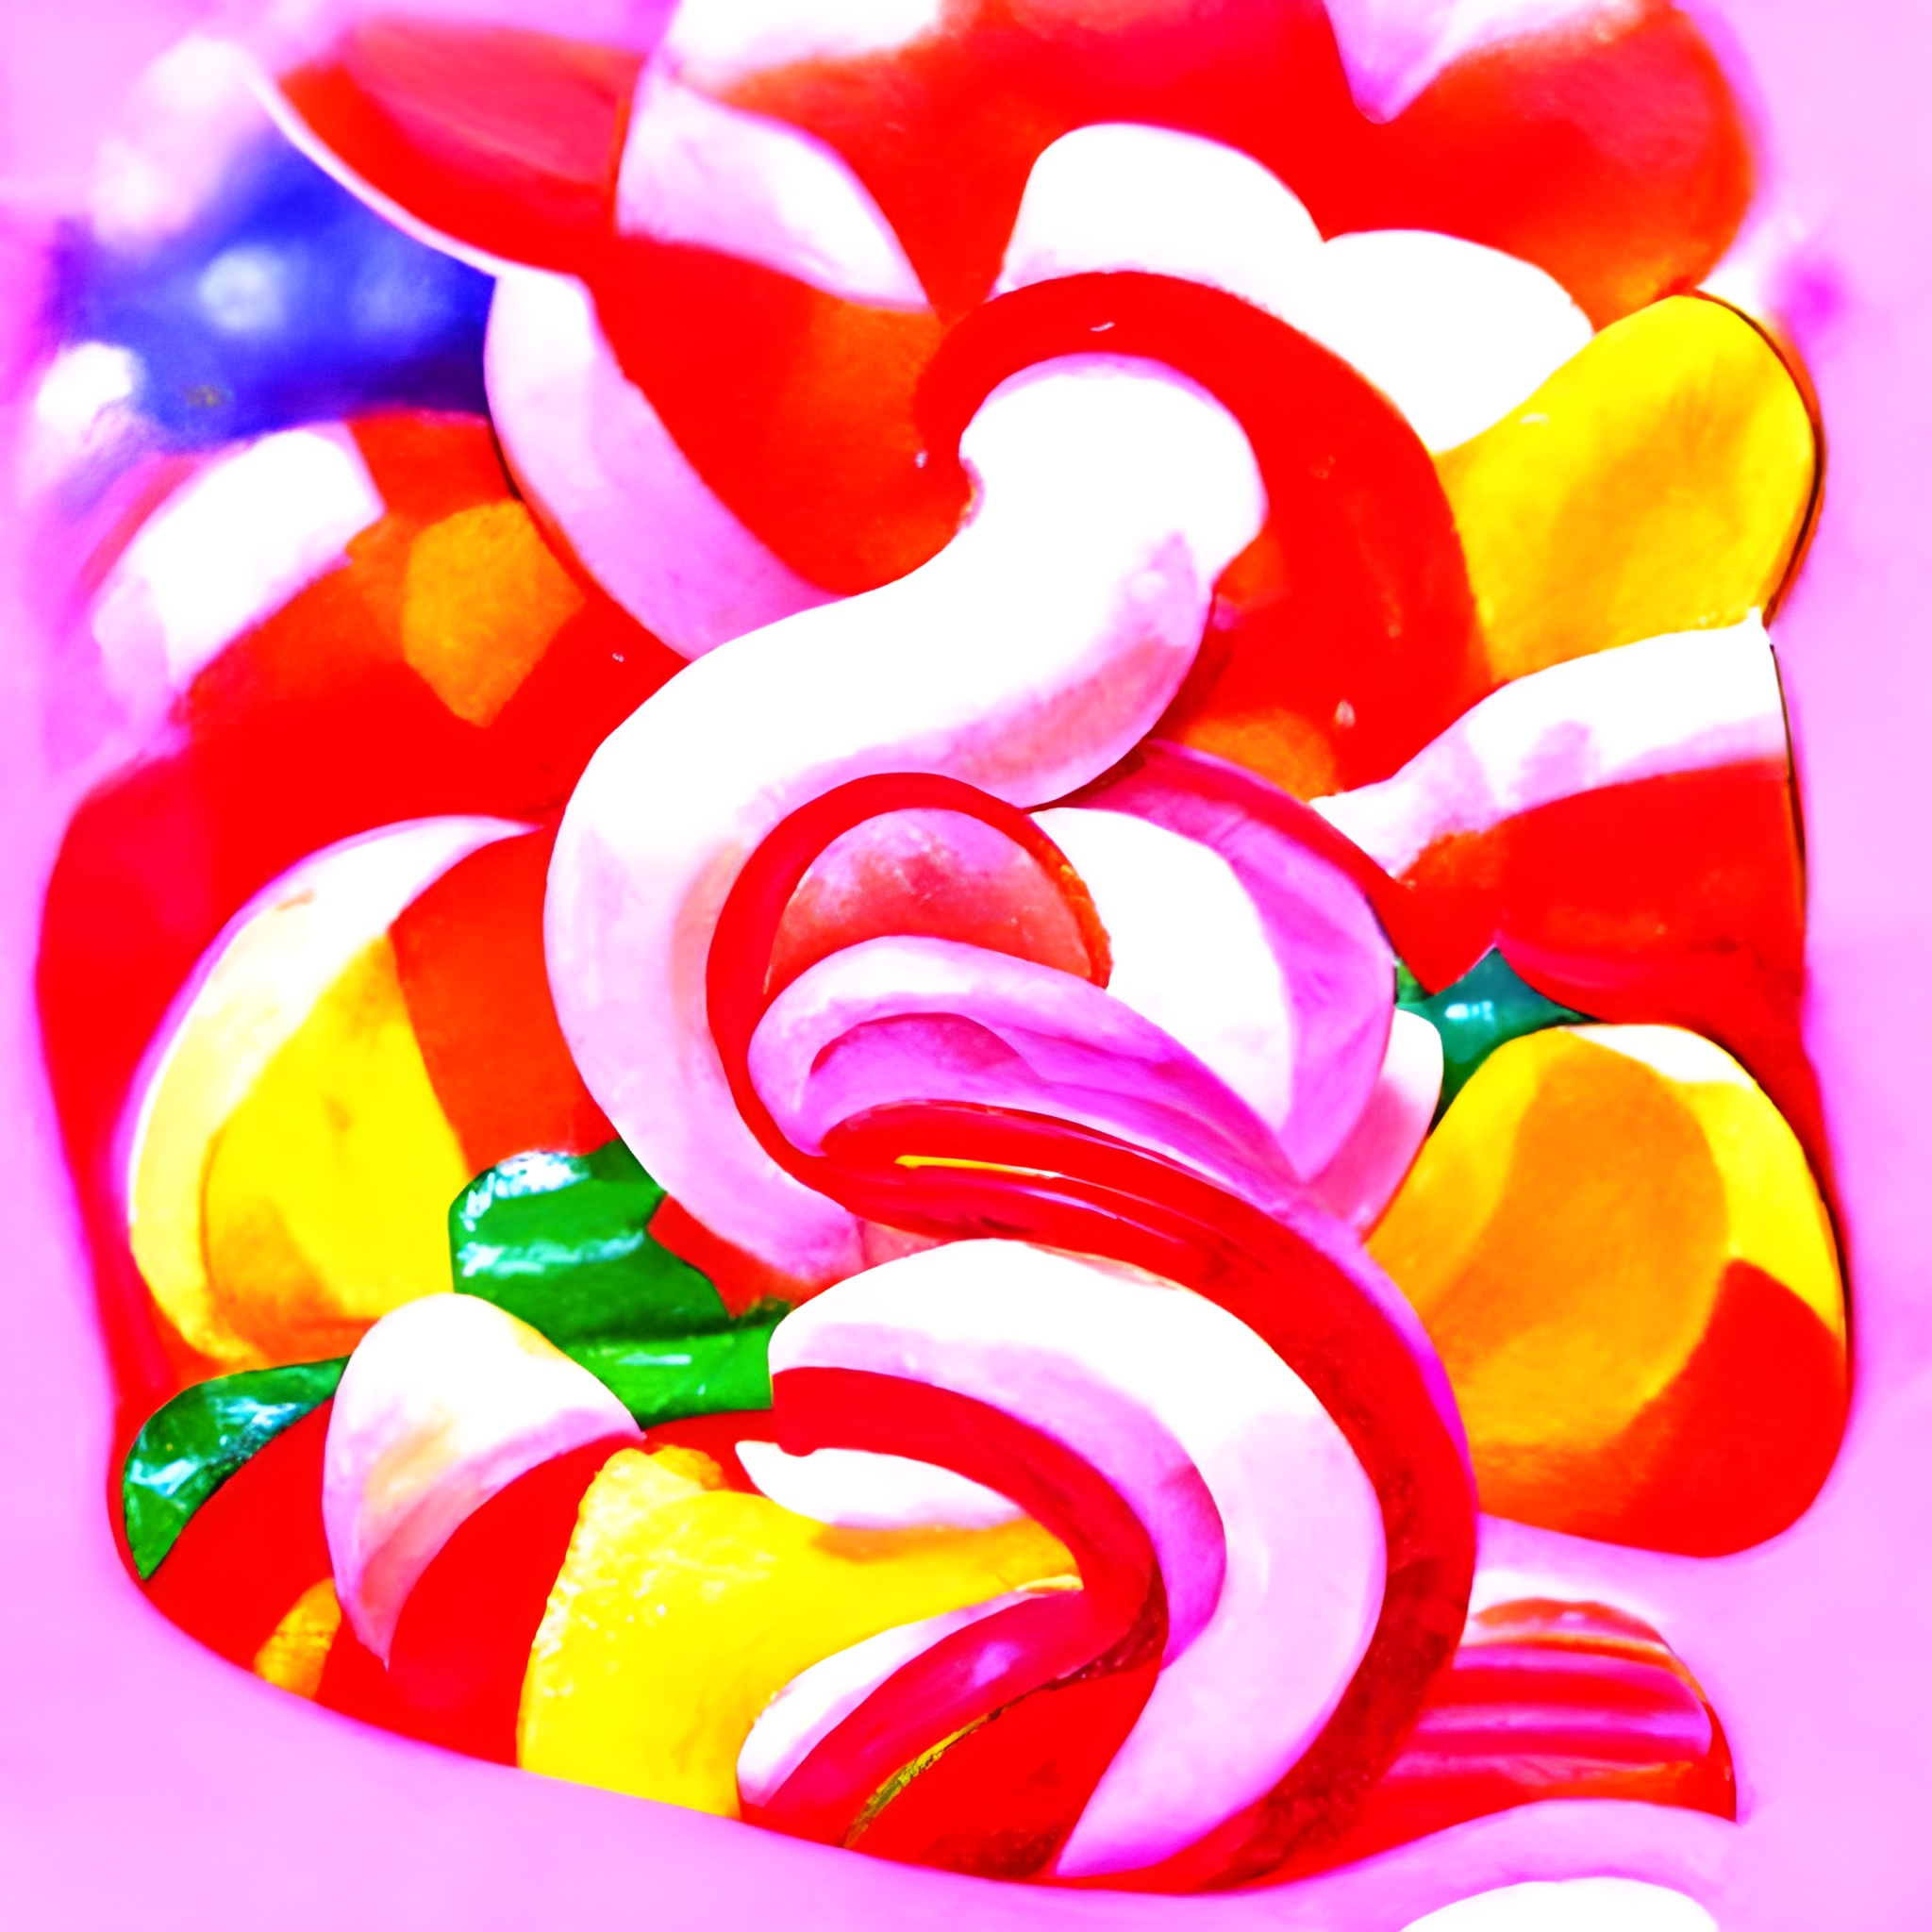 10024 sugar candy at a county fair